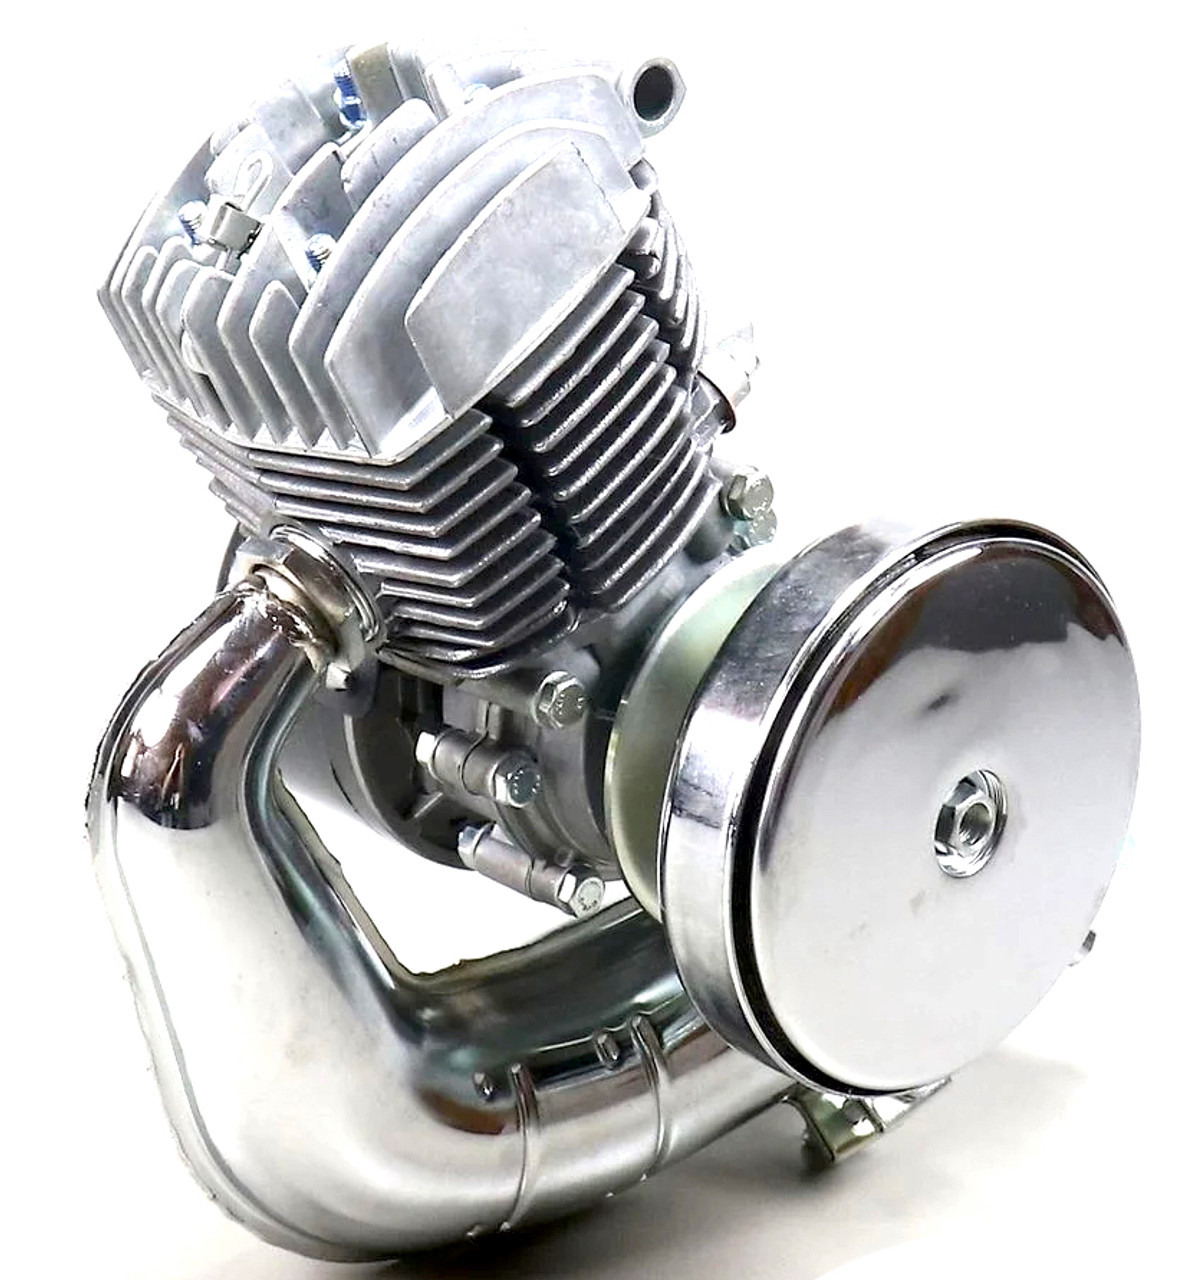 Motobecane AV7 Complete Engine